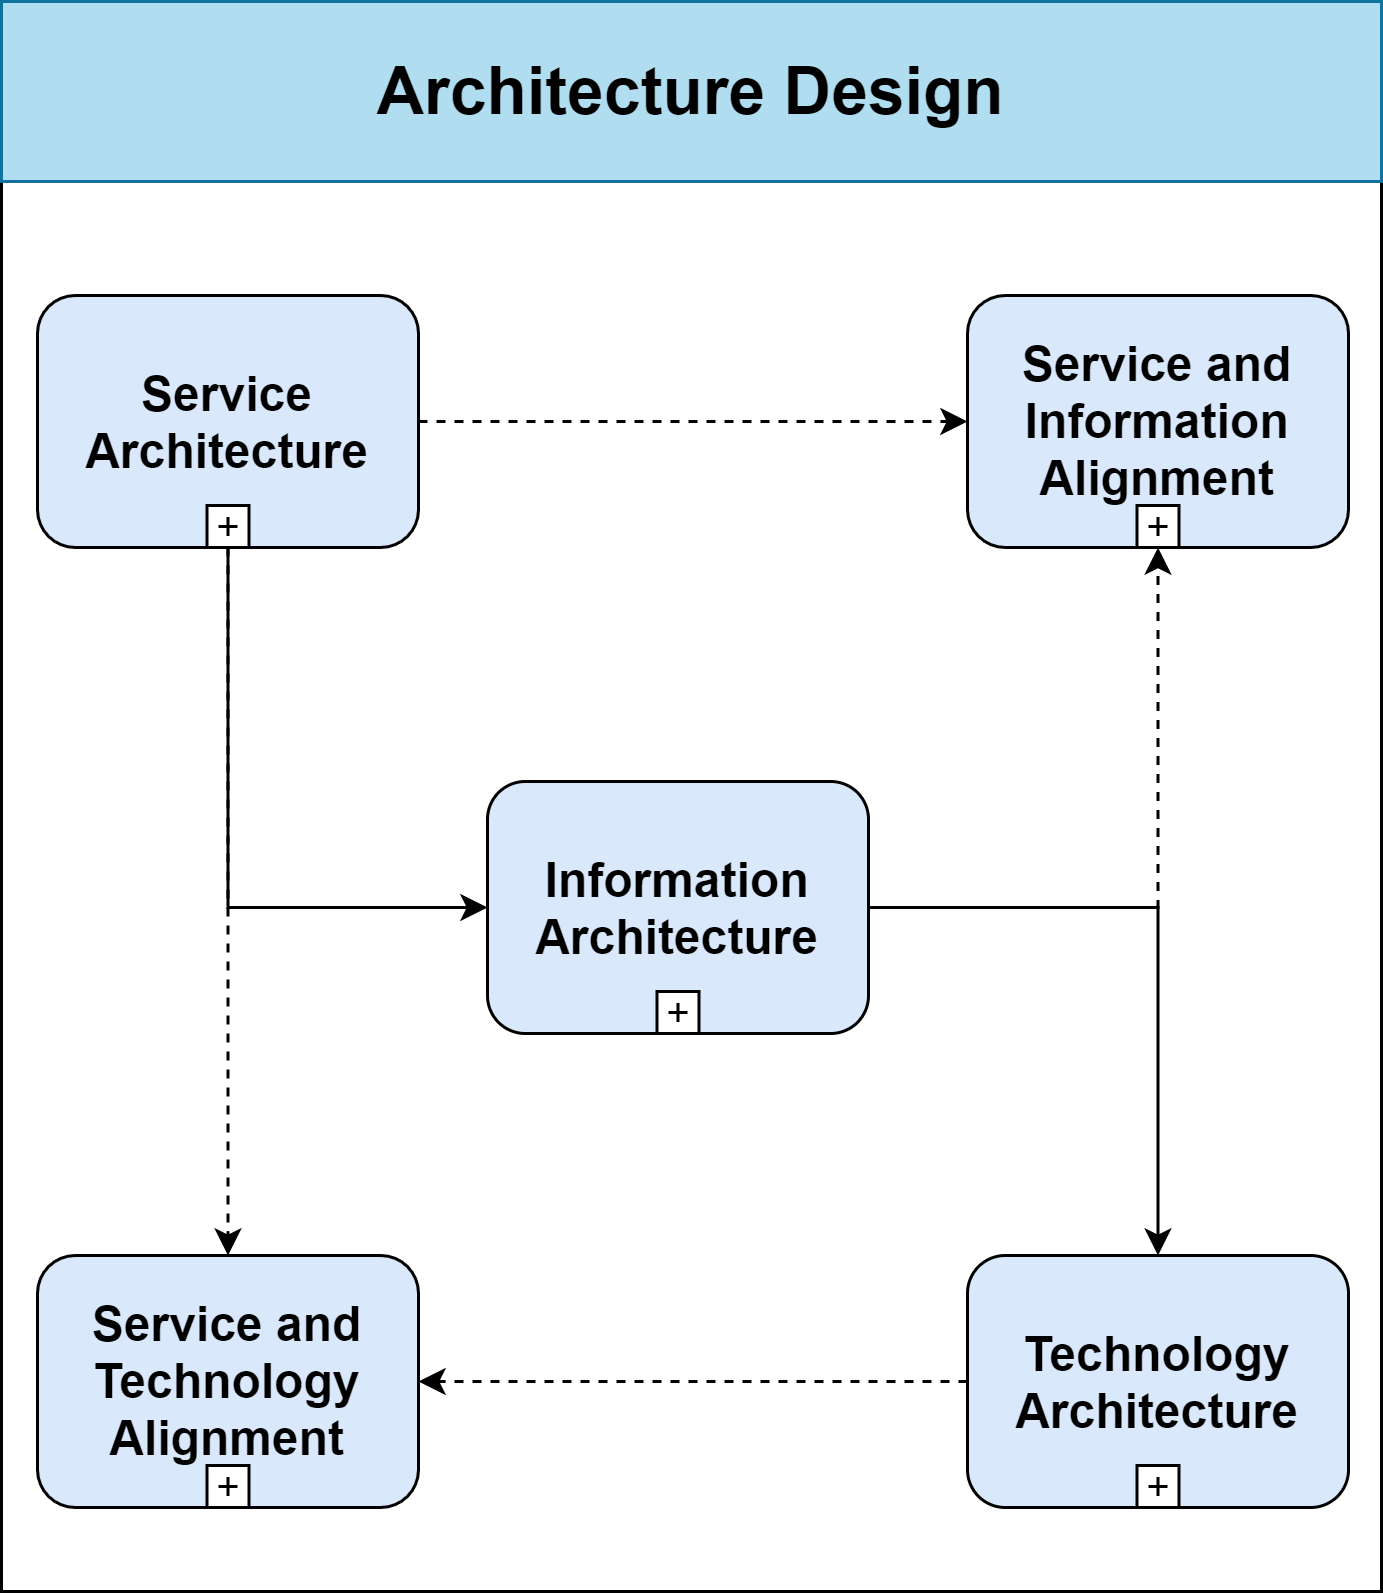 Architecture Design - Enterprise Architecture Management for Smart Cities